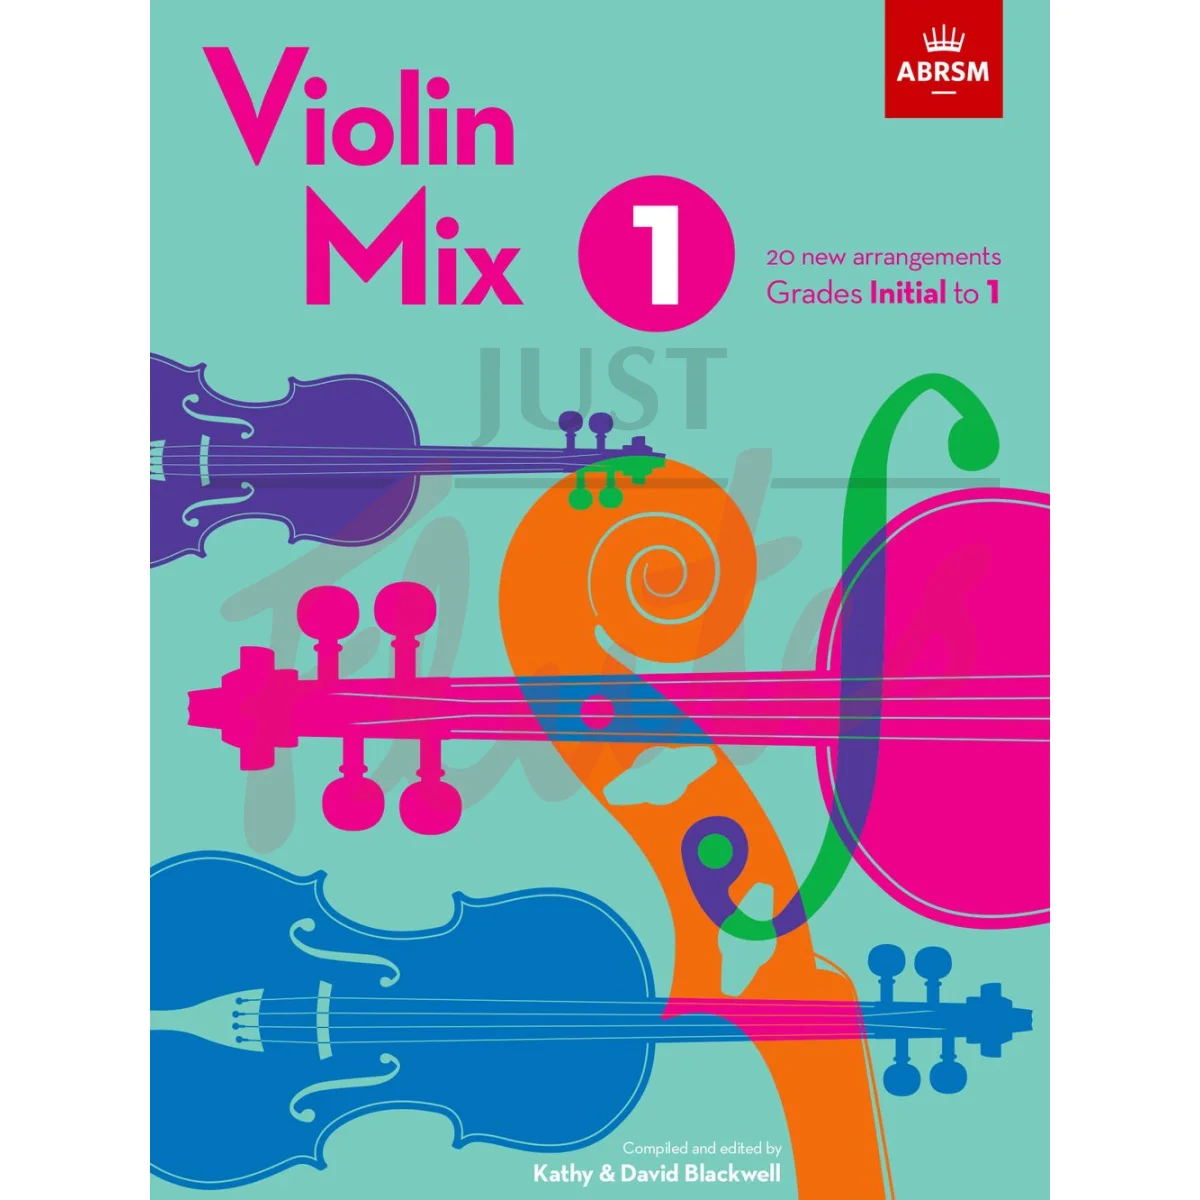 Violin Mix 1, Grades Initial to 1